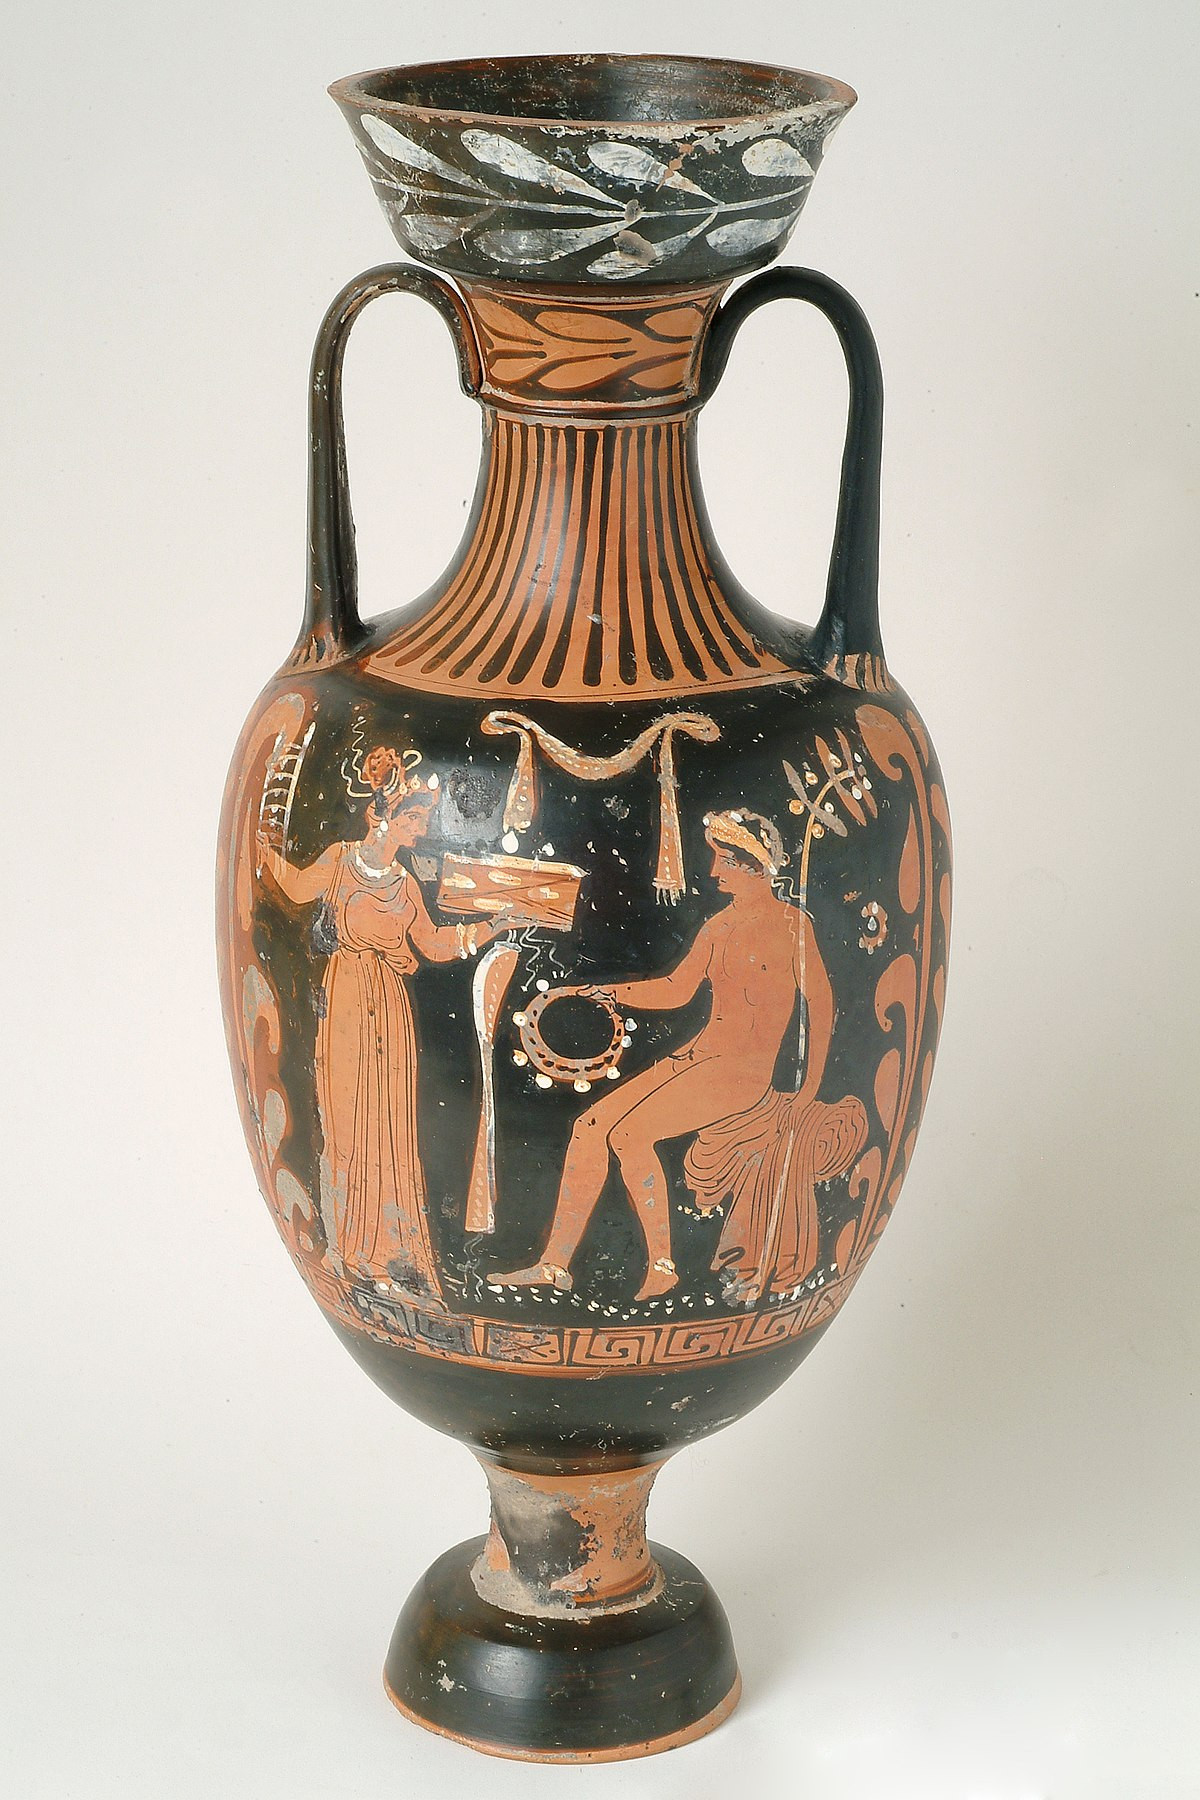 15 Lovable Antique Ceramic Vases 2024 free download antique ceramic vases of q29966310 wikidata intended for 1200px msr 93 1 2 mv a